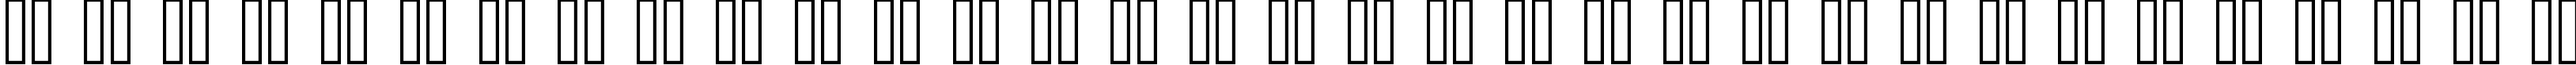 Пример написания русского алфавита шрифтом Base 02